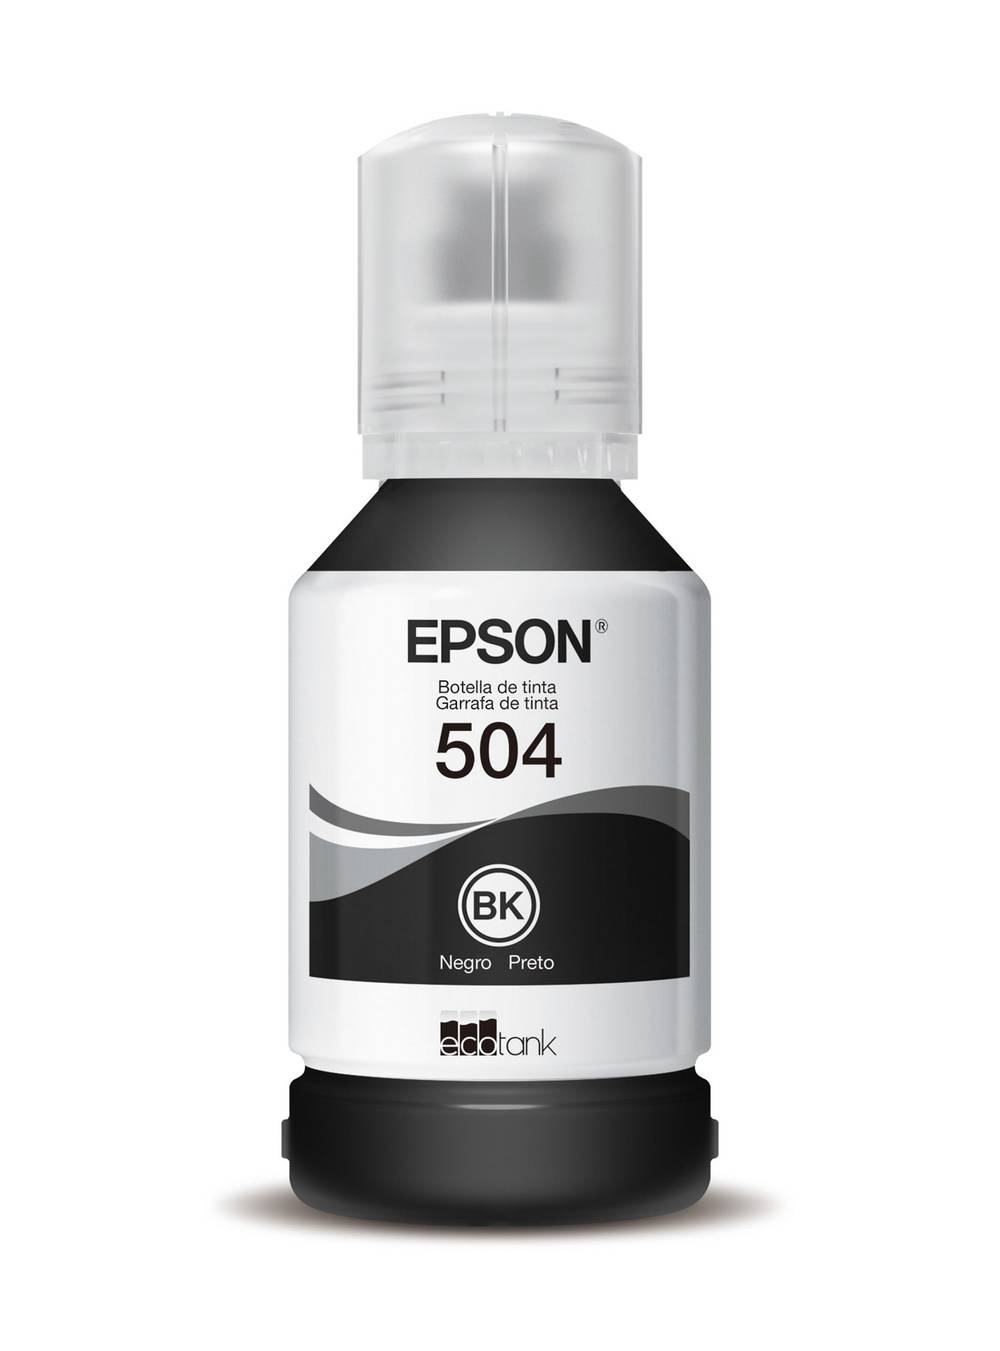 Epson botella tinta t504120 black (127 ml)